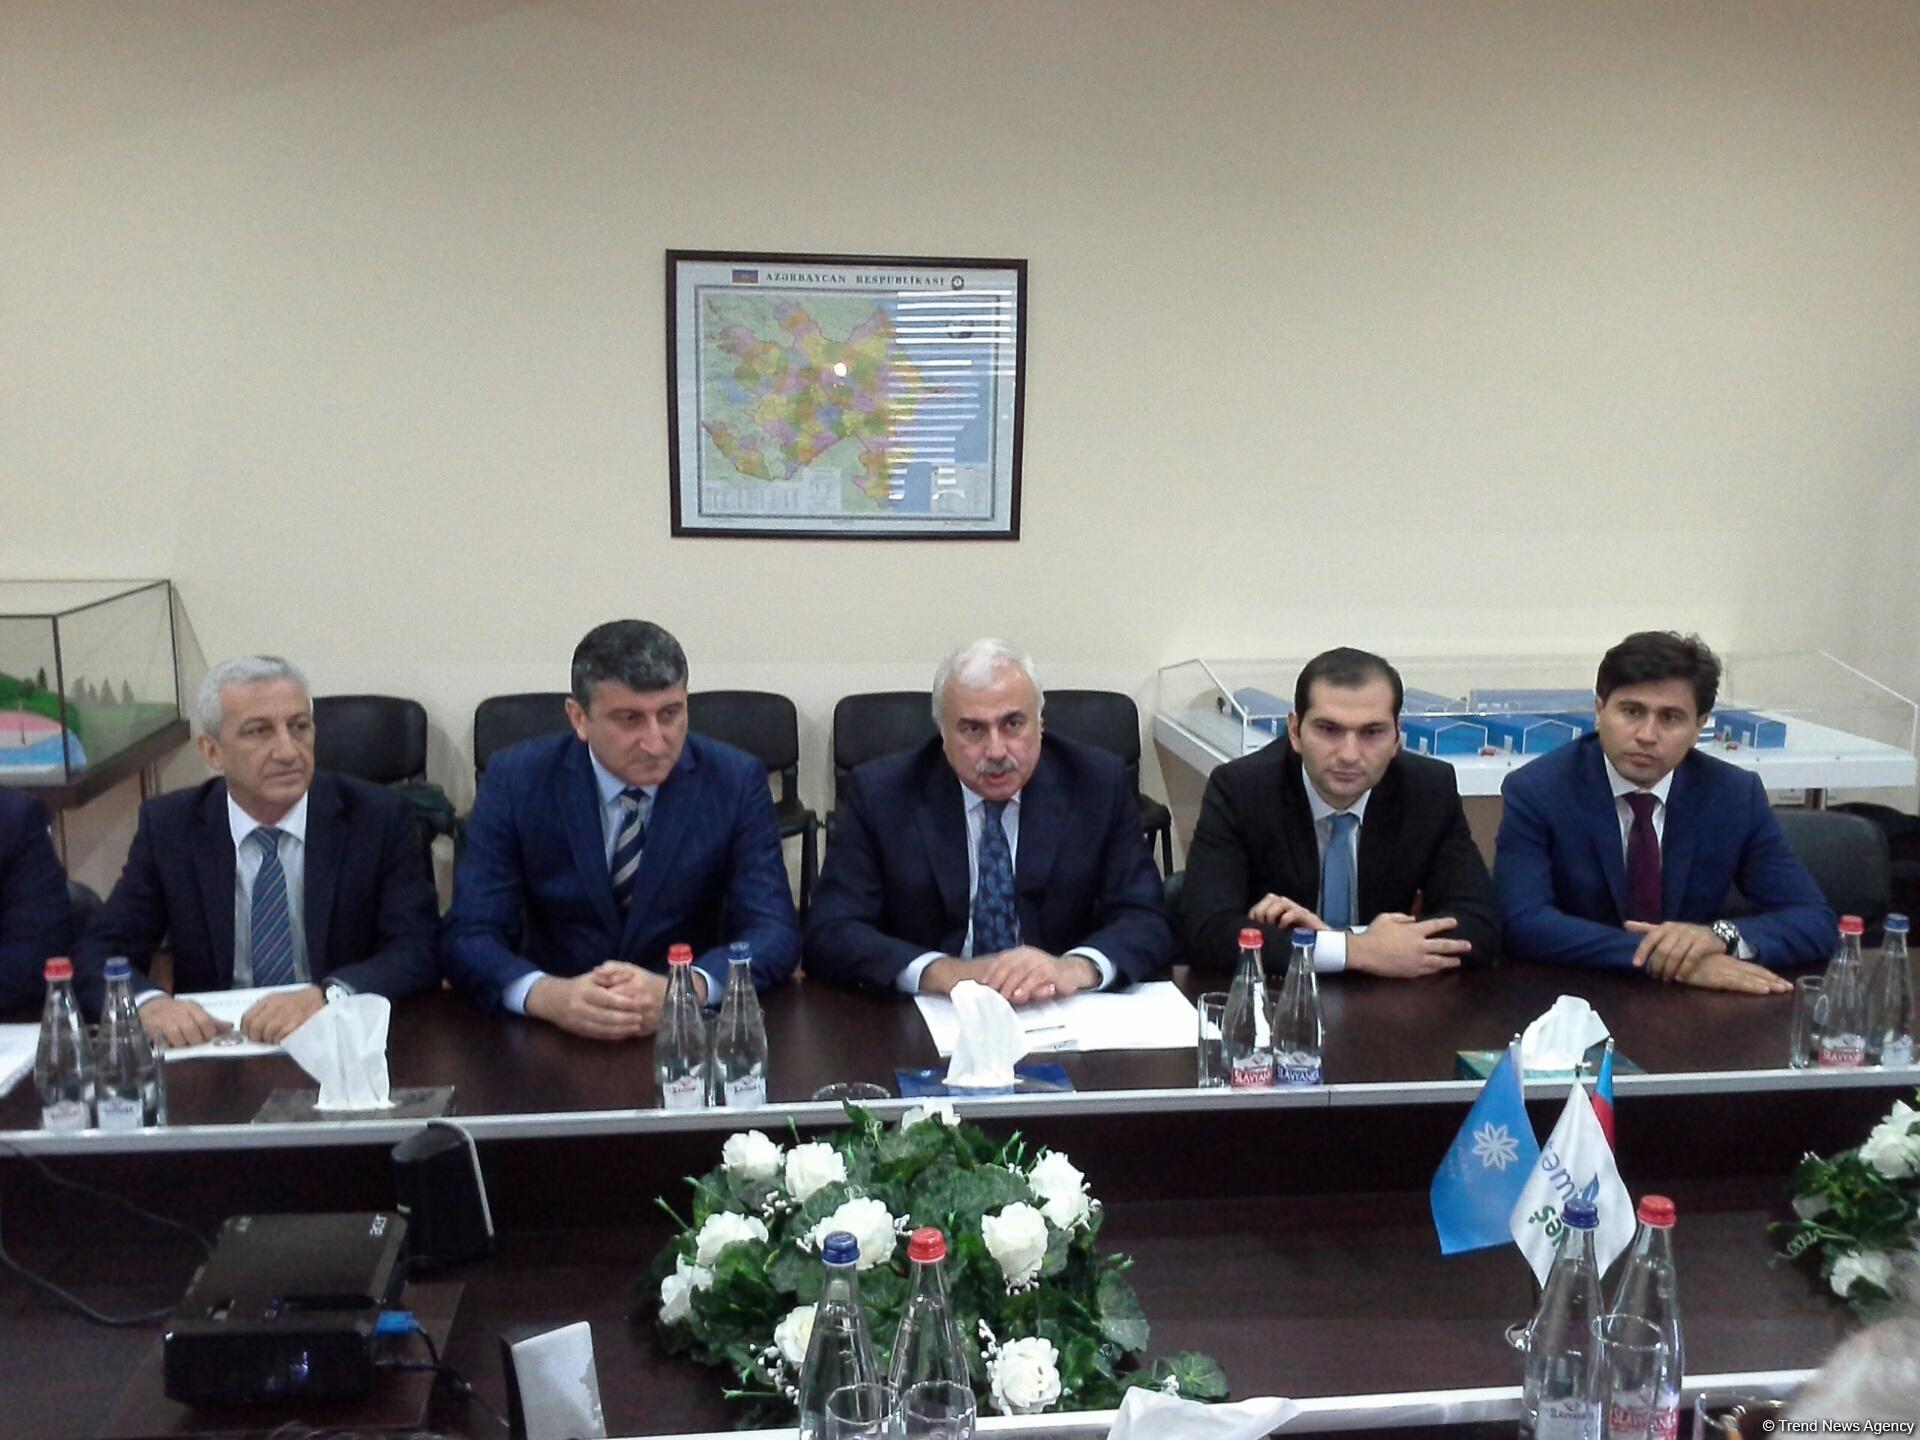 Зияд Самедзаде: Правильное использование бытовых отходов важно для развития экономики Азербайджана (ФОТО)